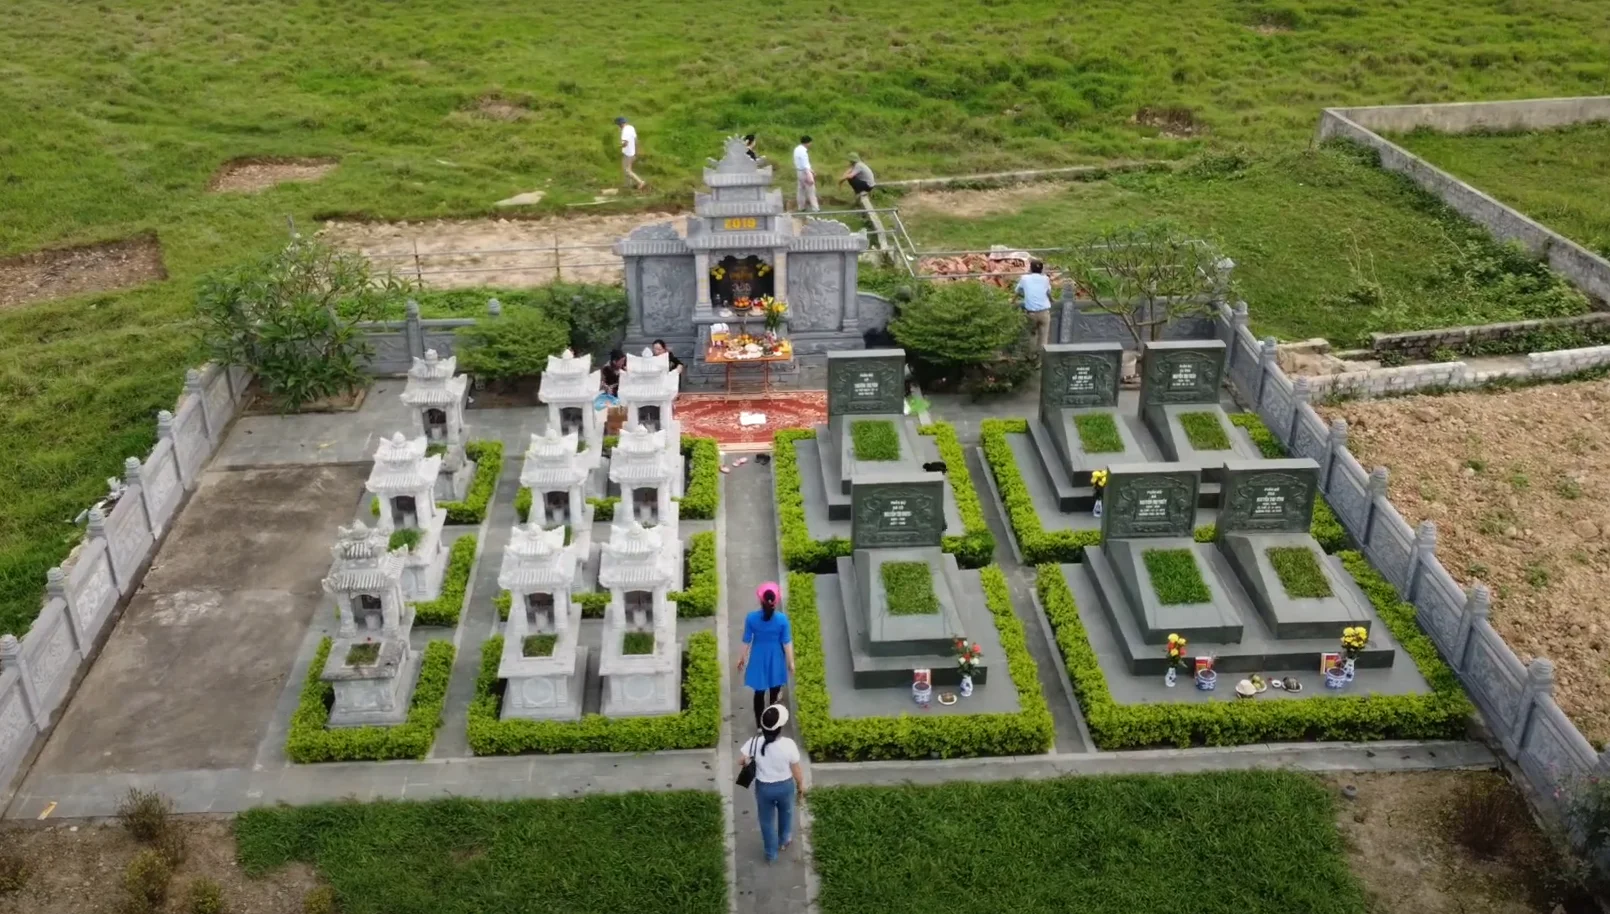 Khu lăng mộ có kích thước 5x19m được xây dựng riêng cho dòng họ Nguyễn Gia